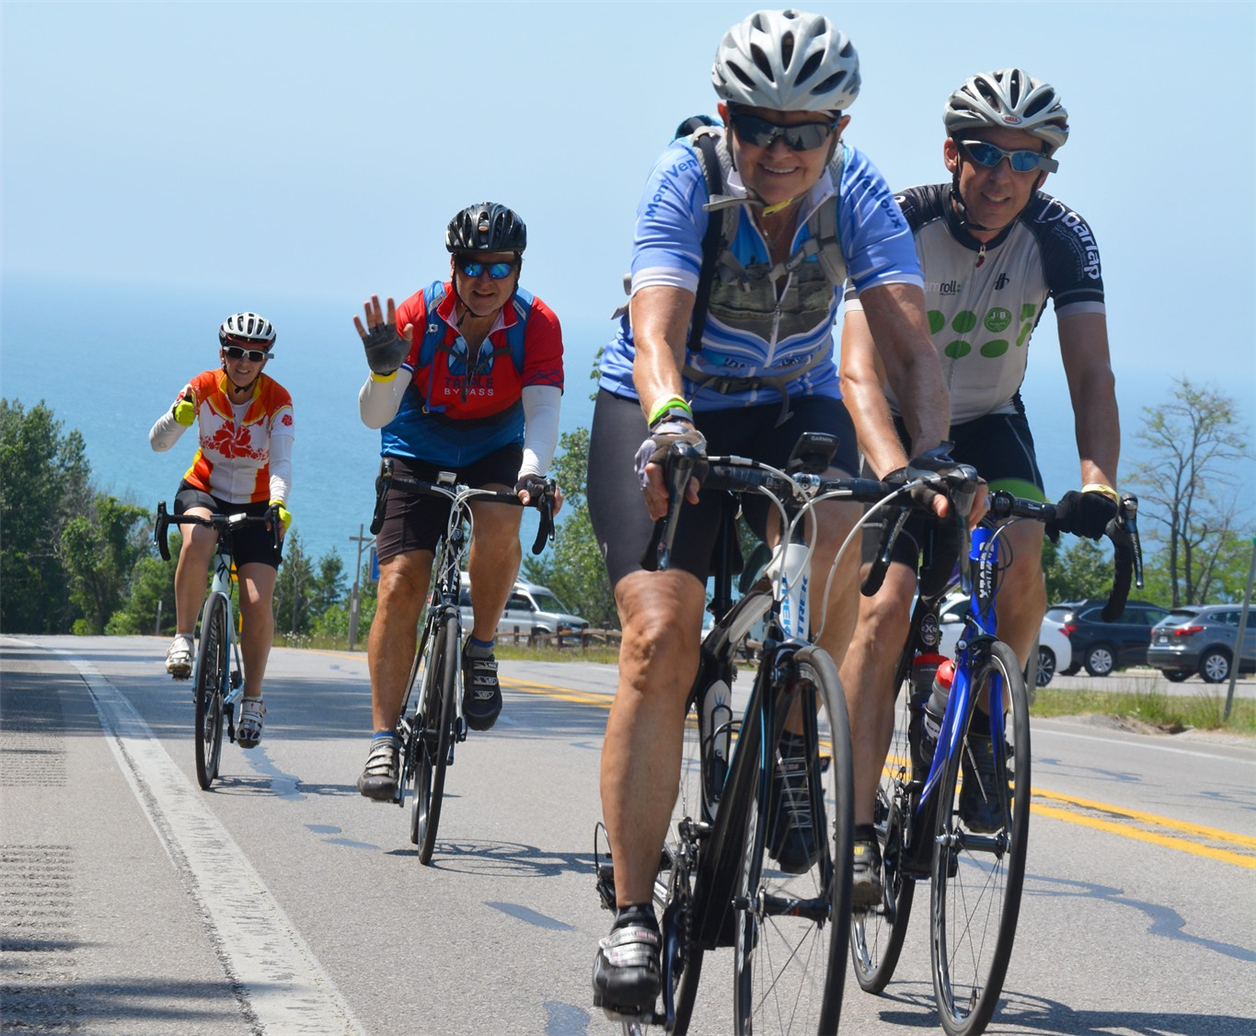 MUP: A Summer Cycling Adventure in Michigan’s U.P.!